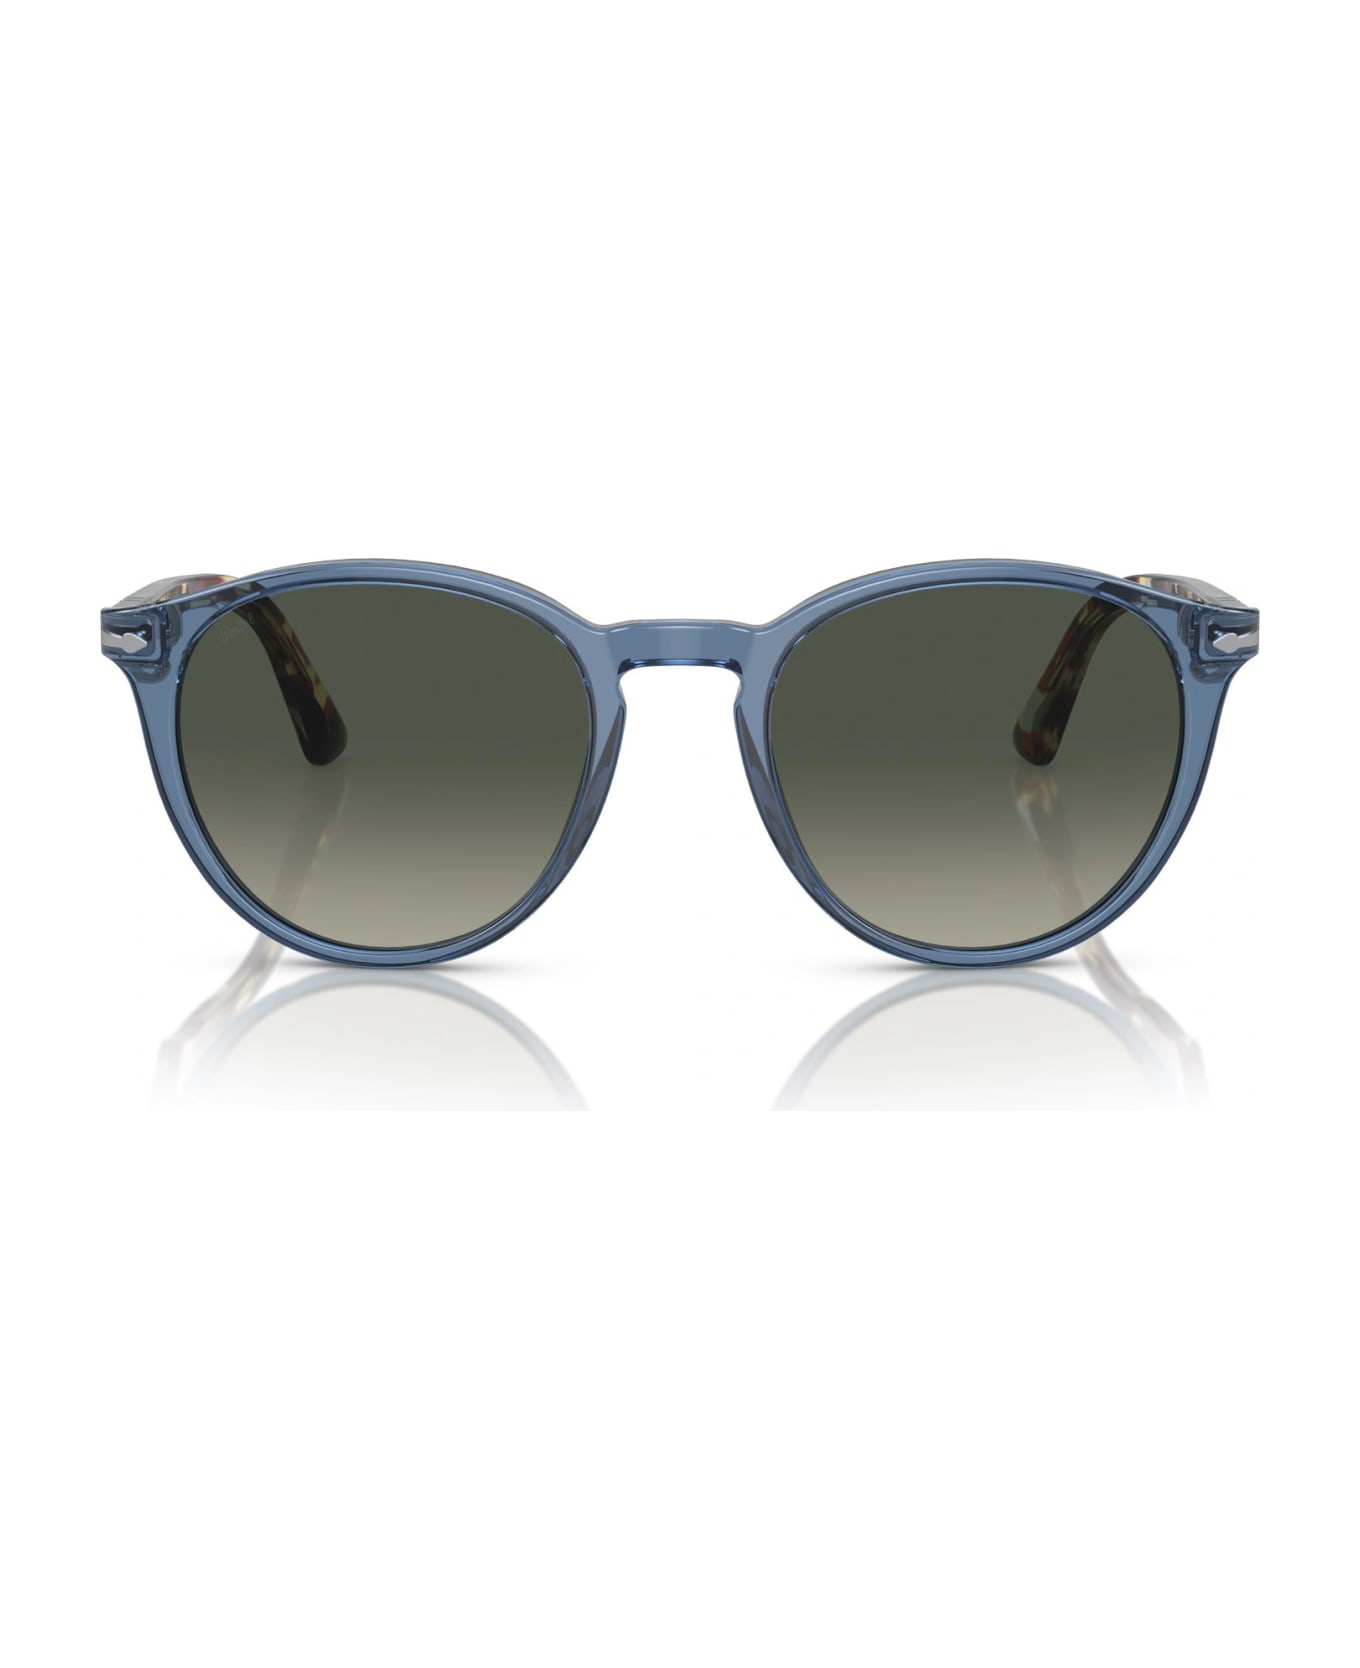 Persol Po3152S 12027/71 Sunglasses - cazal 607 tribute to cari zalloni sunglasses item